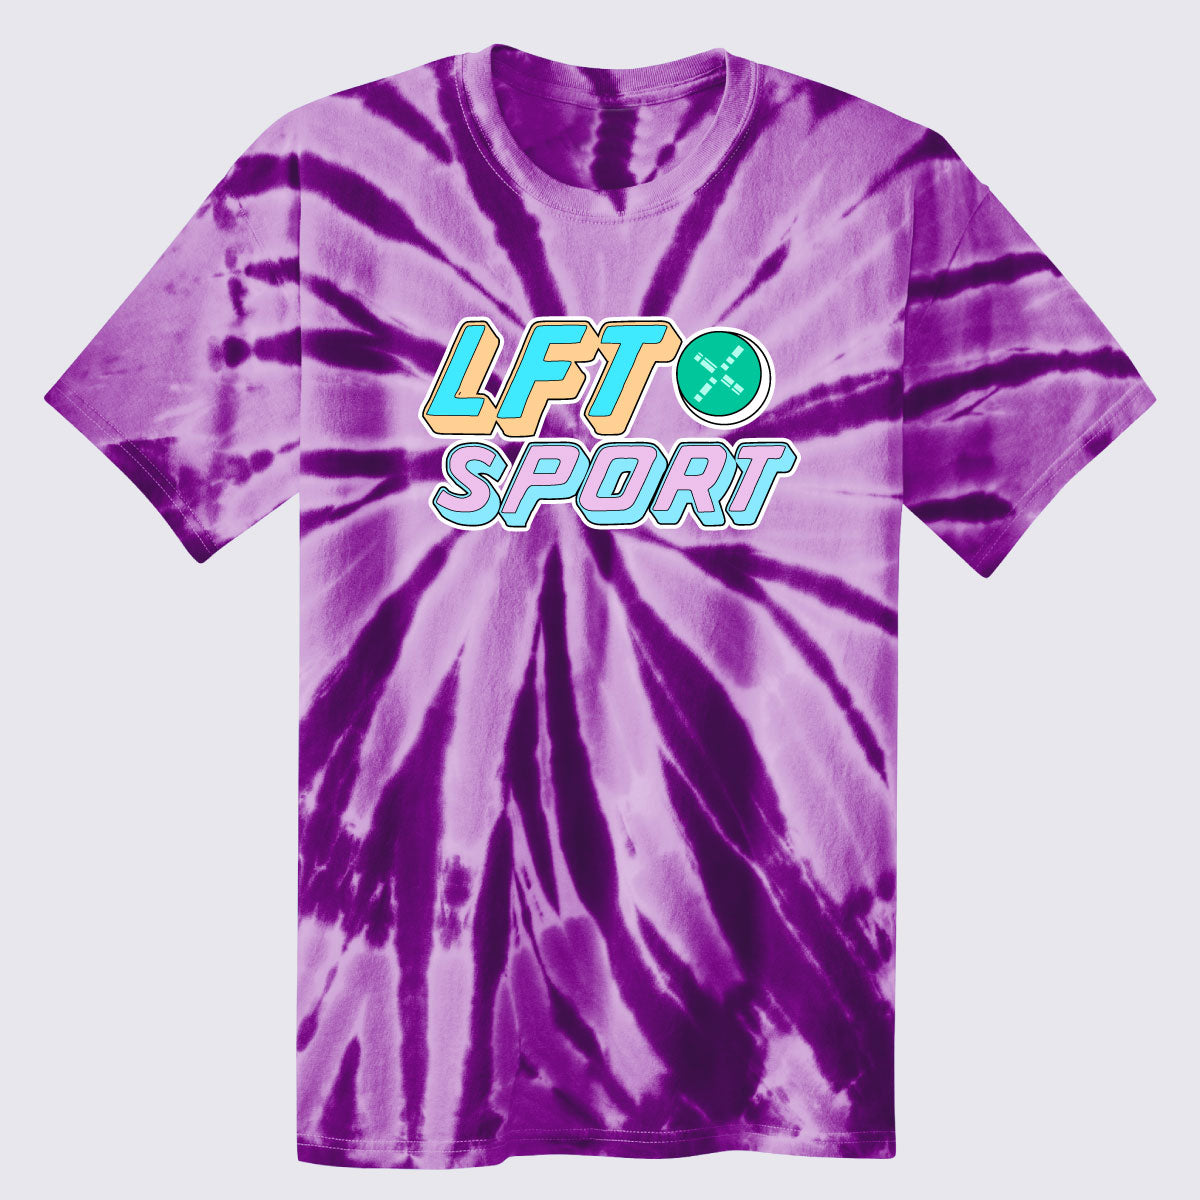 Dvlp Tie-Dye T-Shirt — DVLP Basketball